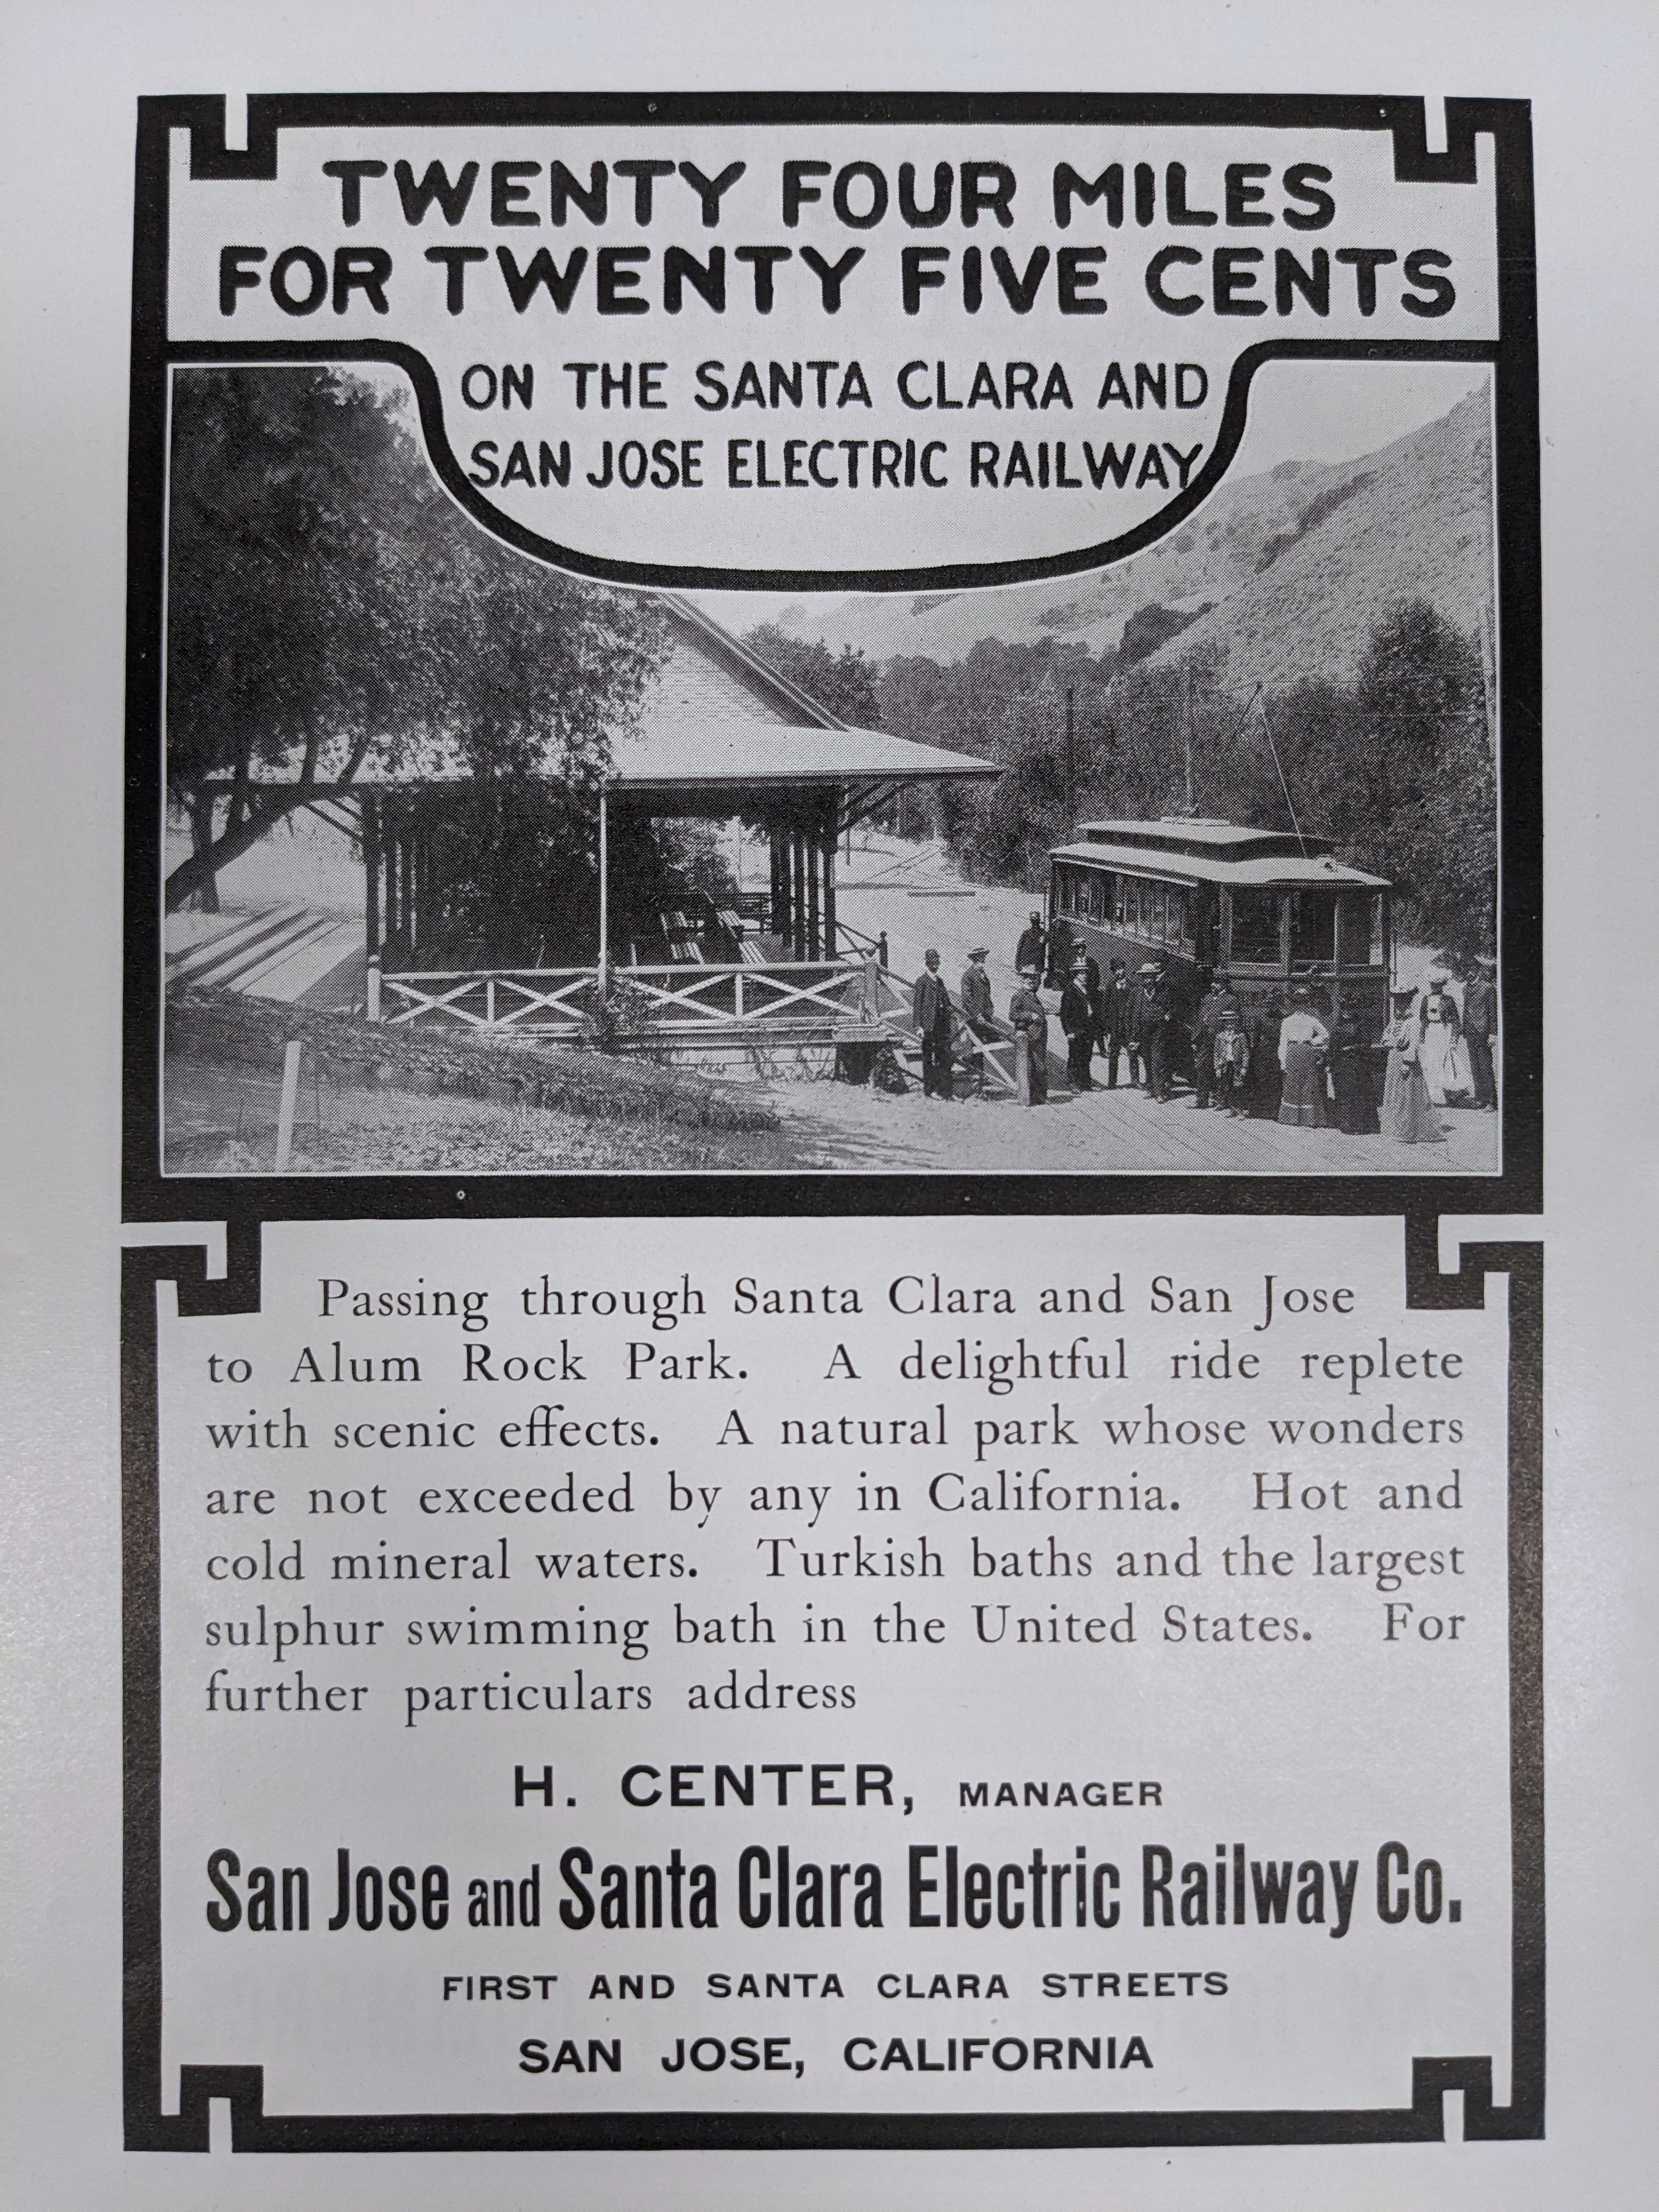 1903 Twenty Four Miles Sunset Magazine clipping